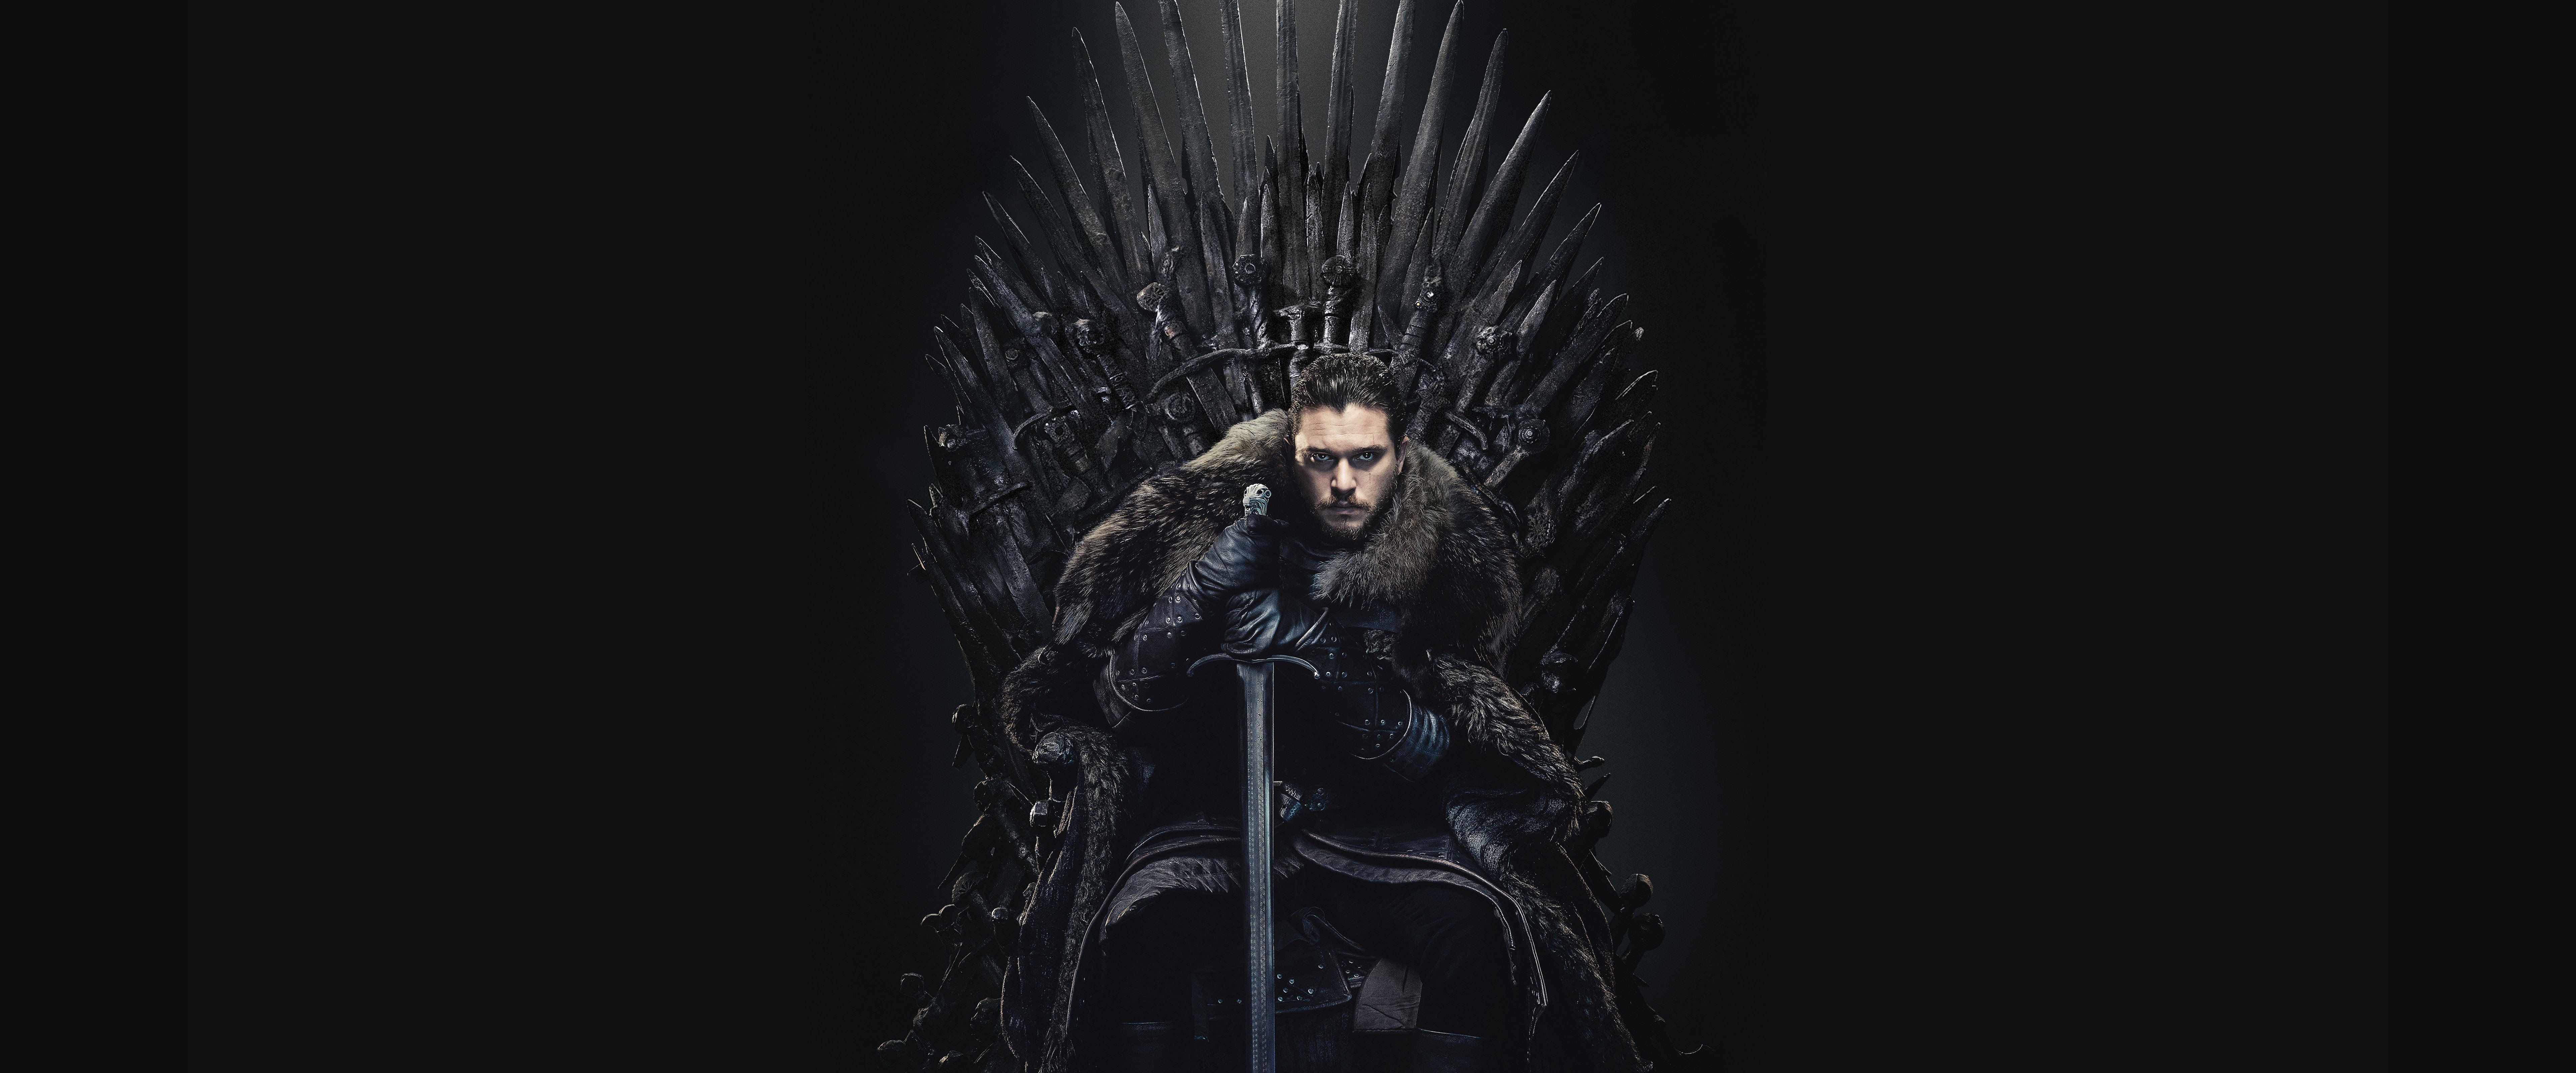 Jon Snow Game of Thrones wallpaper: Jon Snow luôn là 1 trong những nhân vật được yêu thích nhất trong Game of Thrones. Với bộ sưu tập wallpaper Jon Snow, bạn sẽ bị cuốn hút bởi vẻ ngoài anh dũng và cá tính của anh chàng này.